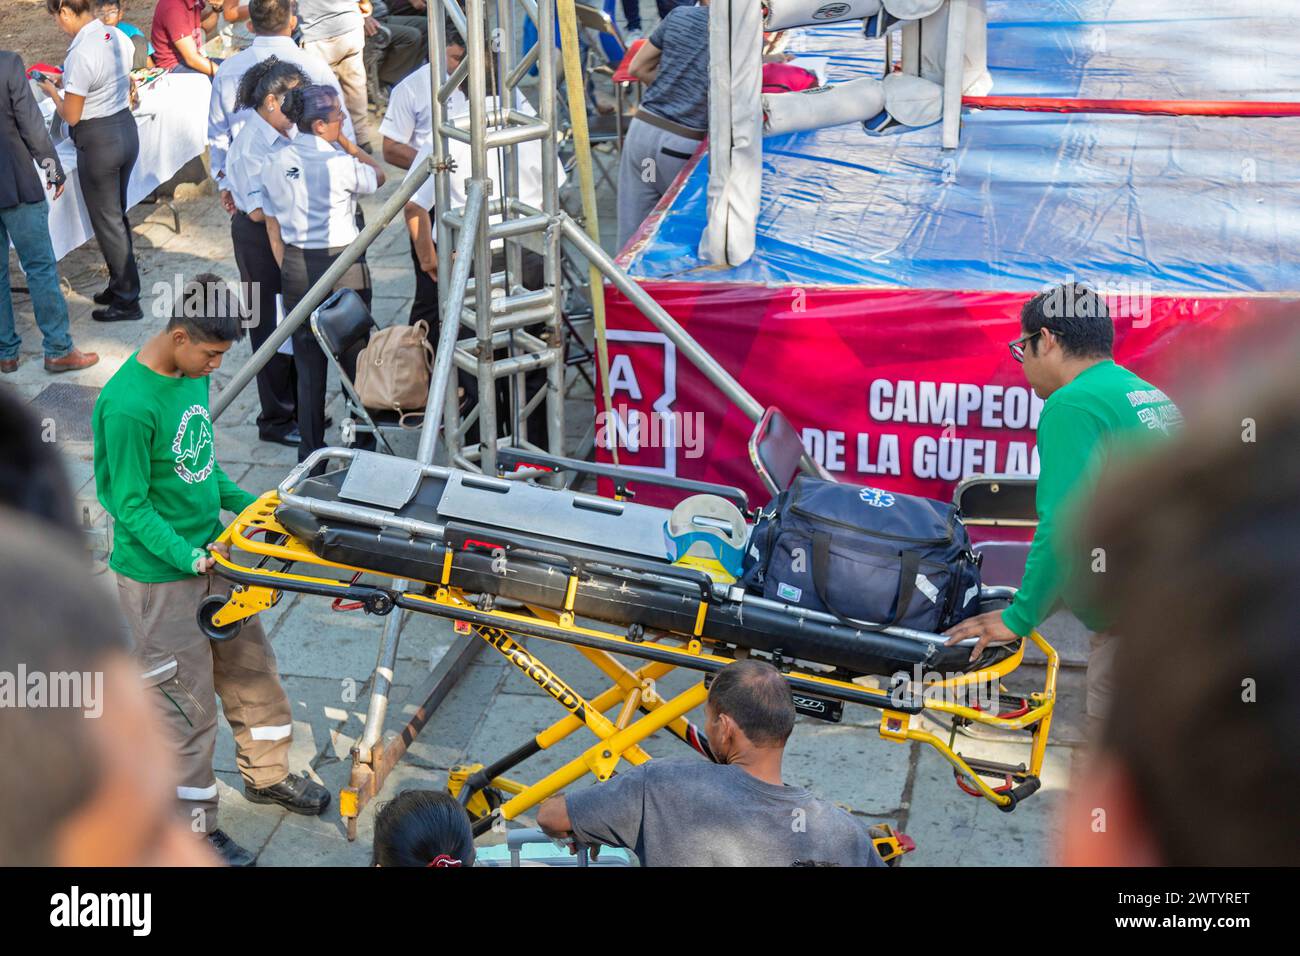 Oaxaca, Mexique - les techniciens médicaux d'urgence apportent une civière et du matériel médical au cas où il serait nécessaire pendant les matchs de boxe des jeunes. Banque D'Images